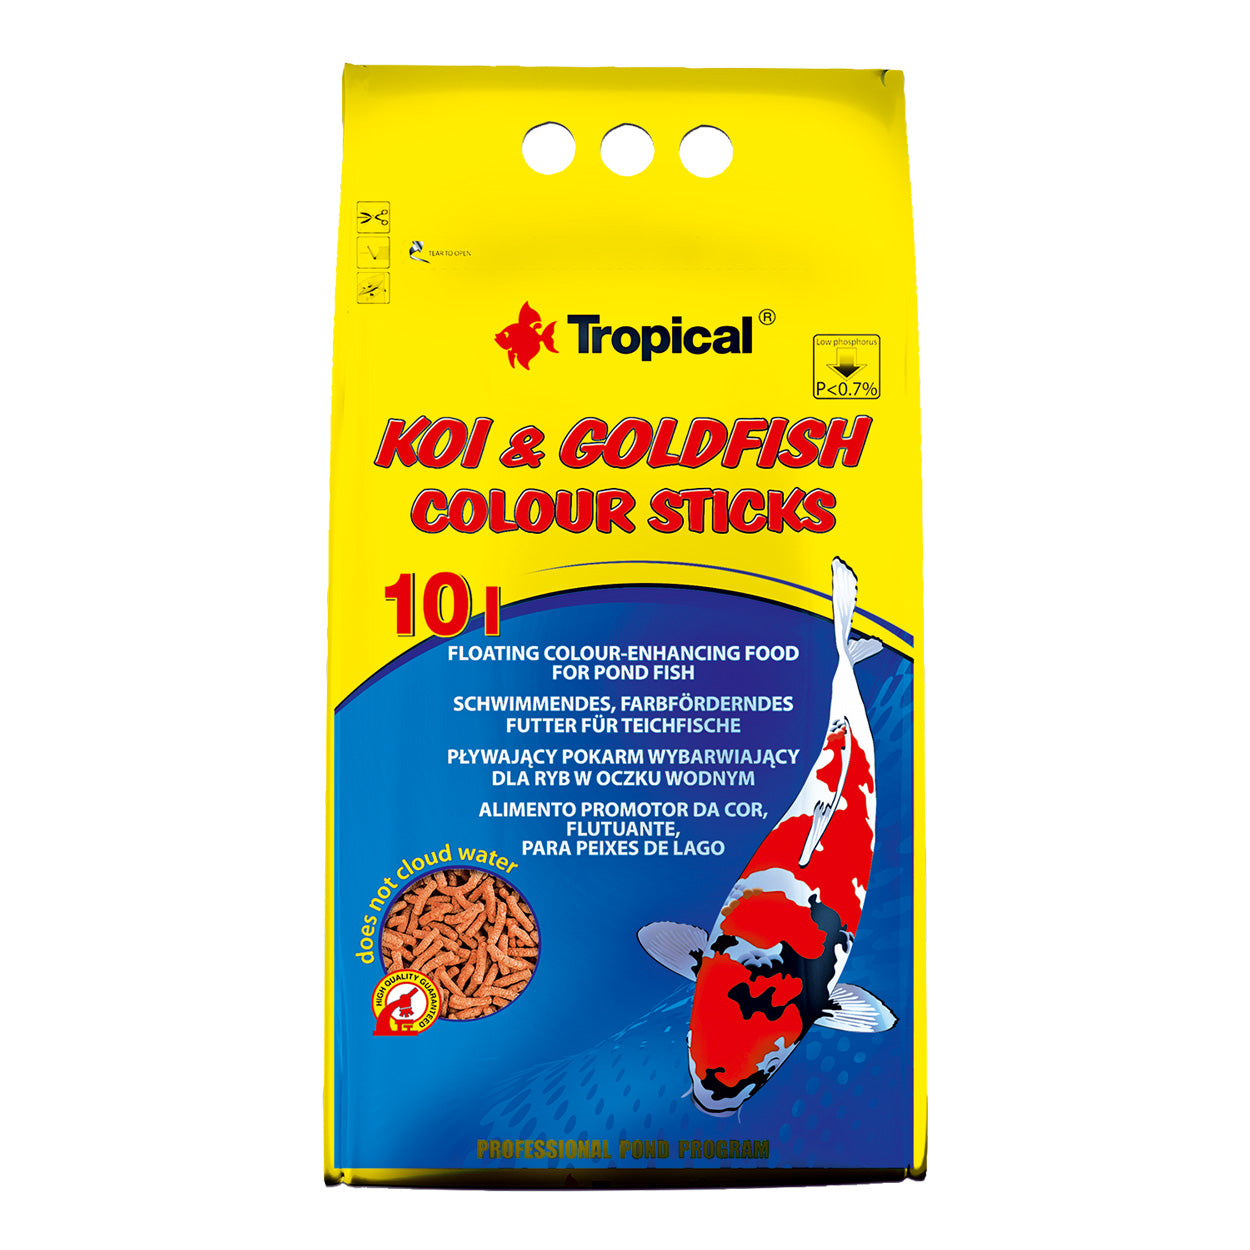 Koi & Goldfish Colour Sticks - 800 g